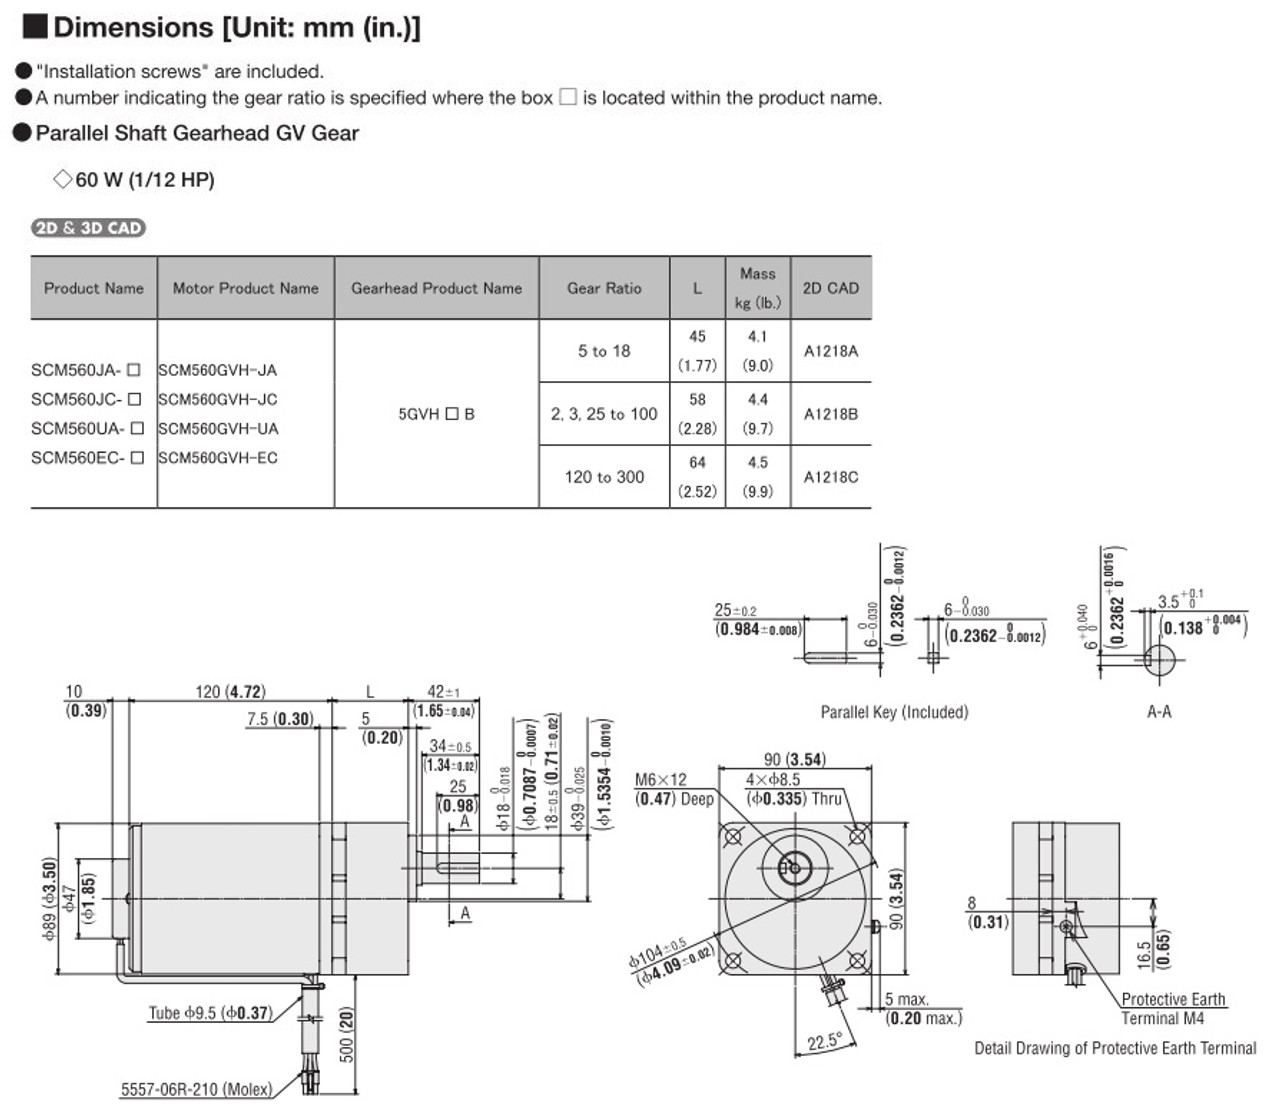 SCM560EC-9 - Dimensions